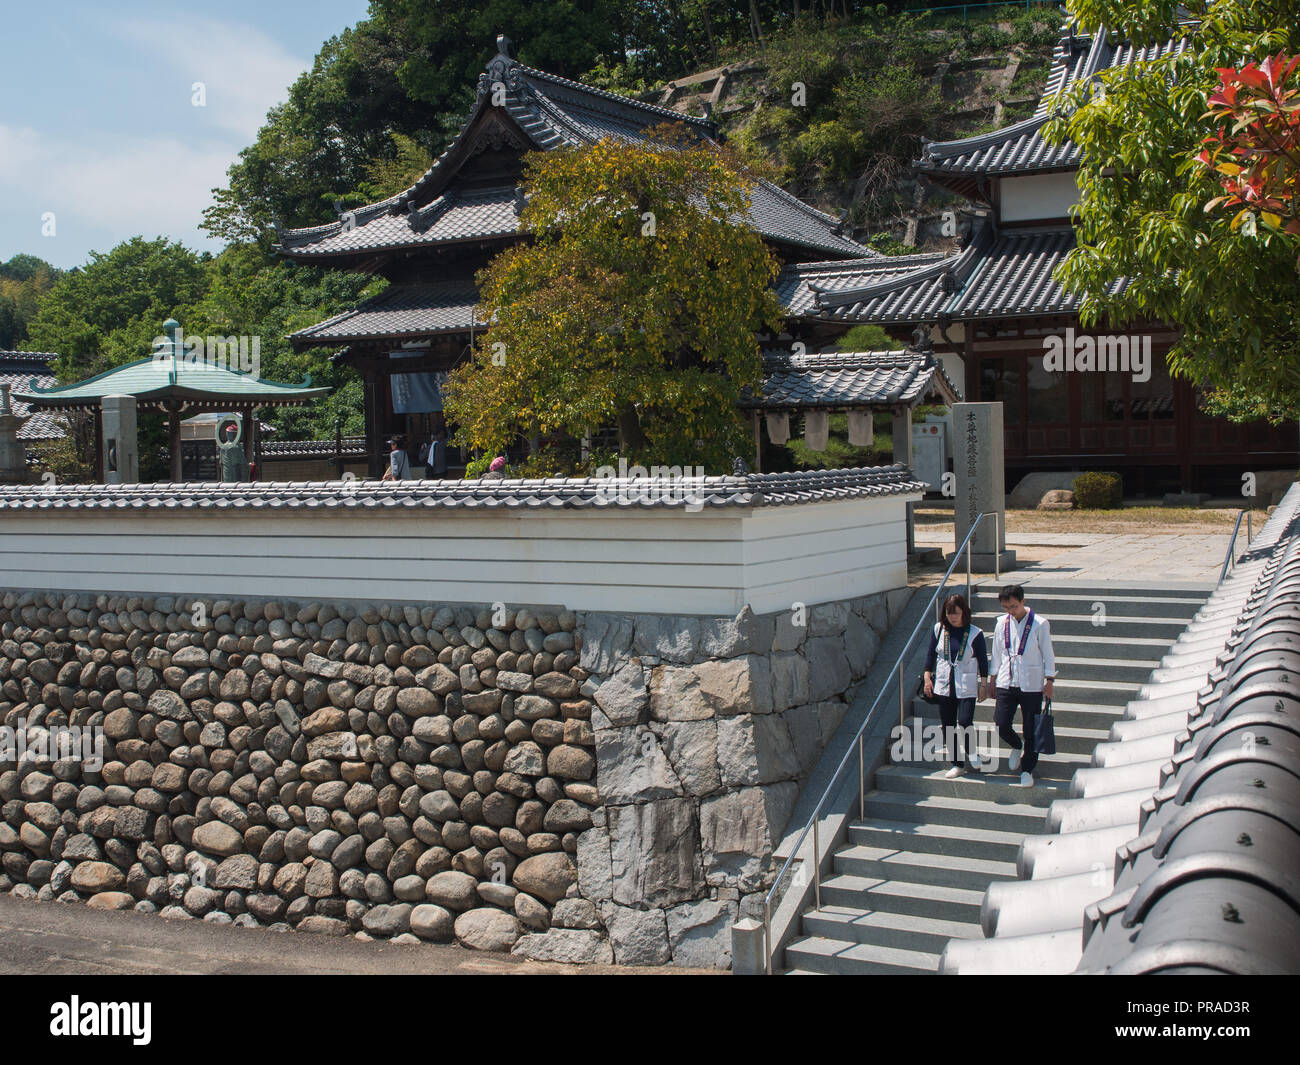 Henro pèlerins descendant des escaliers, Taisanji 56 temple, temple 88 Shikoku pèlerinage, Ehime, au Japon Banque D'Images